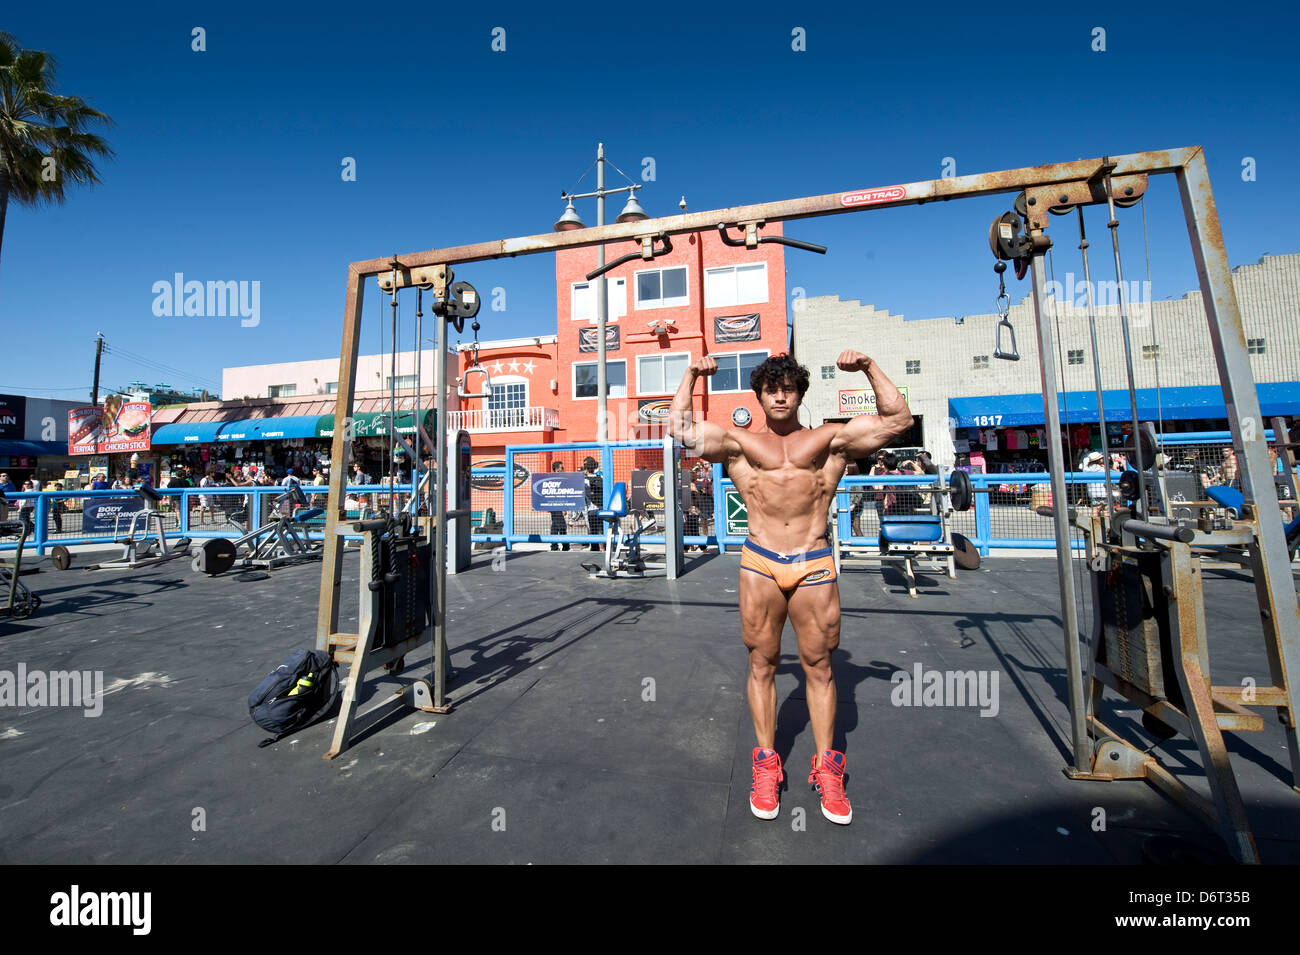 Venice Beach, Santa Monica, California, USA: a bodybuilder shows off his muscles Stock Photo